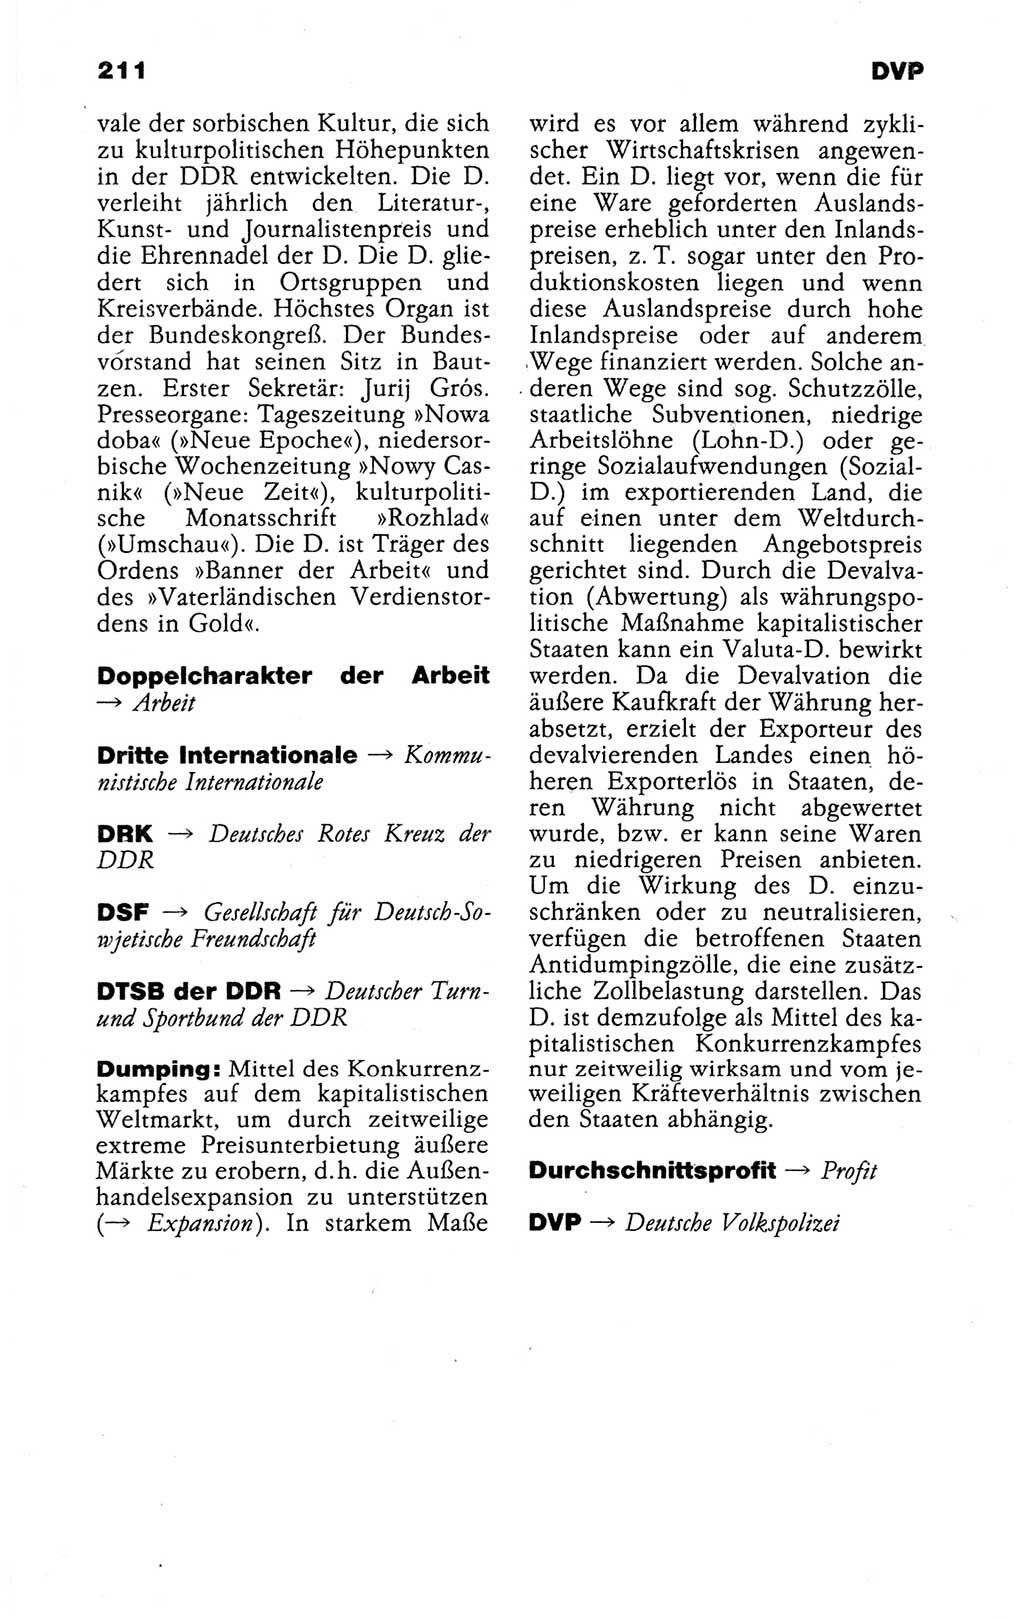 Kleines politisches Wörterbuch [Deutsche Demokratische Republik (DDR)] 1988, Seite 211 (Kl. pol. Wb. DDR 1988, S. 211)